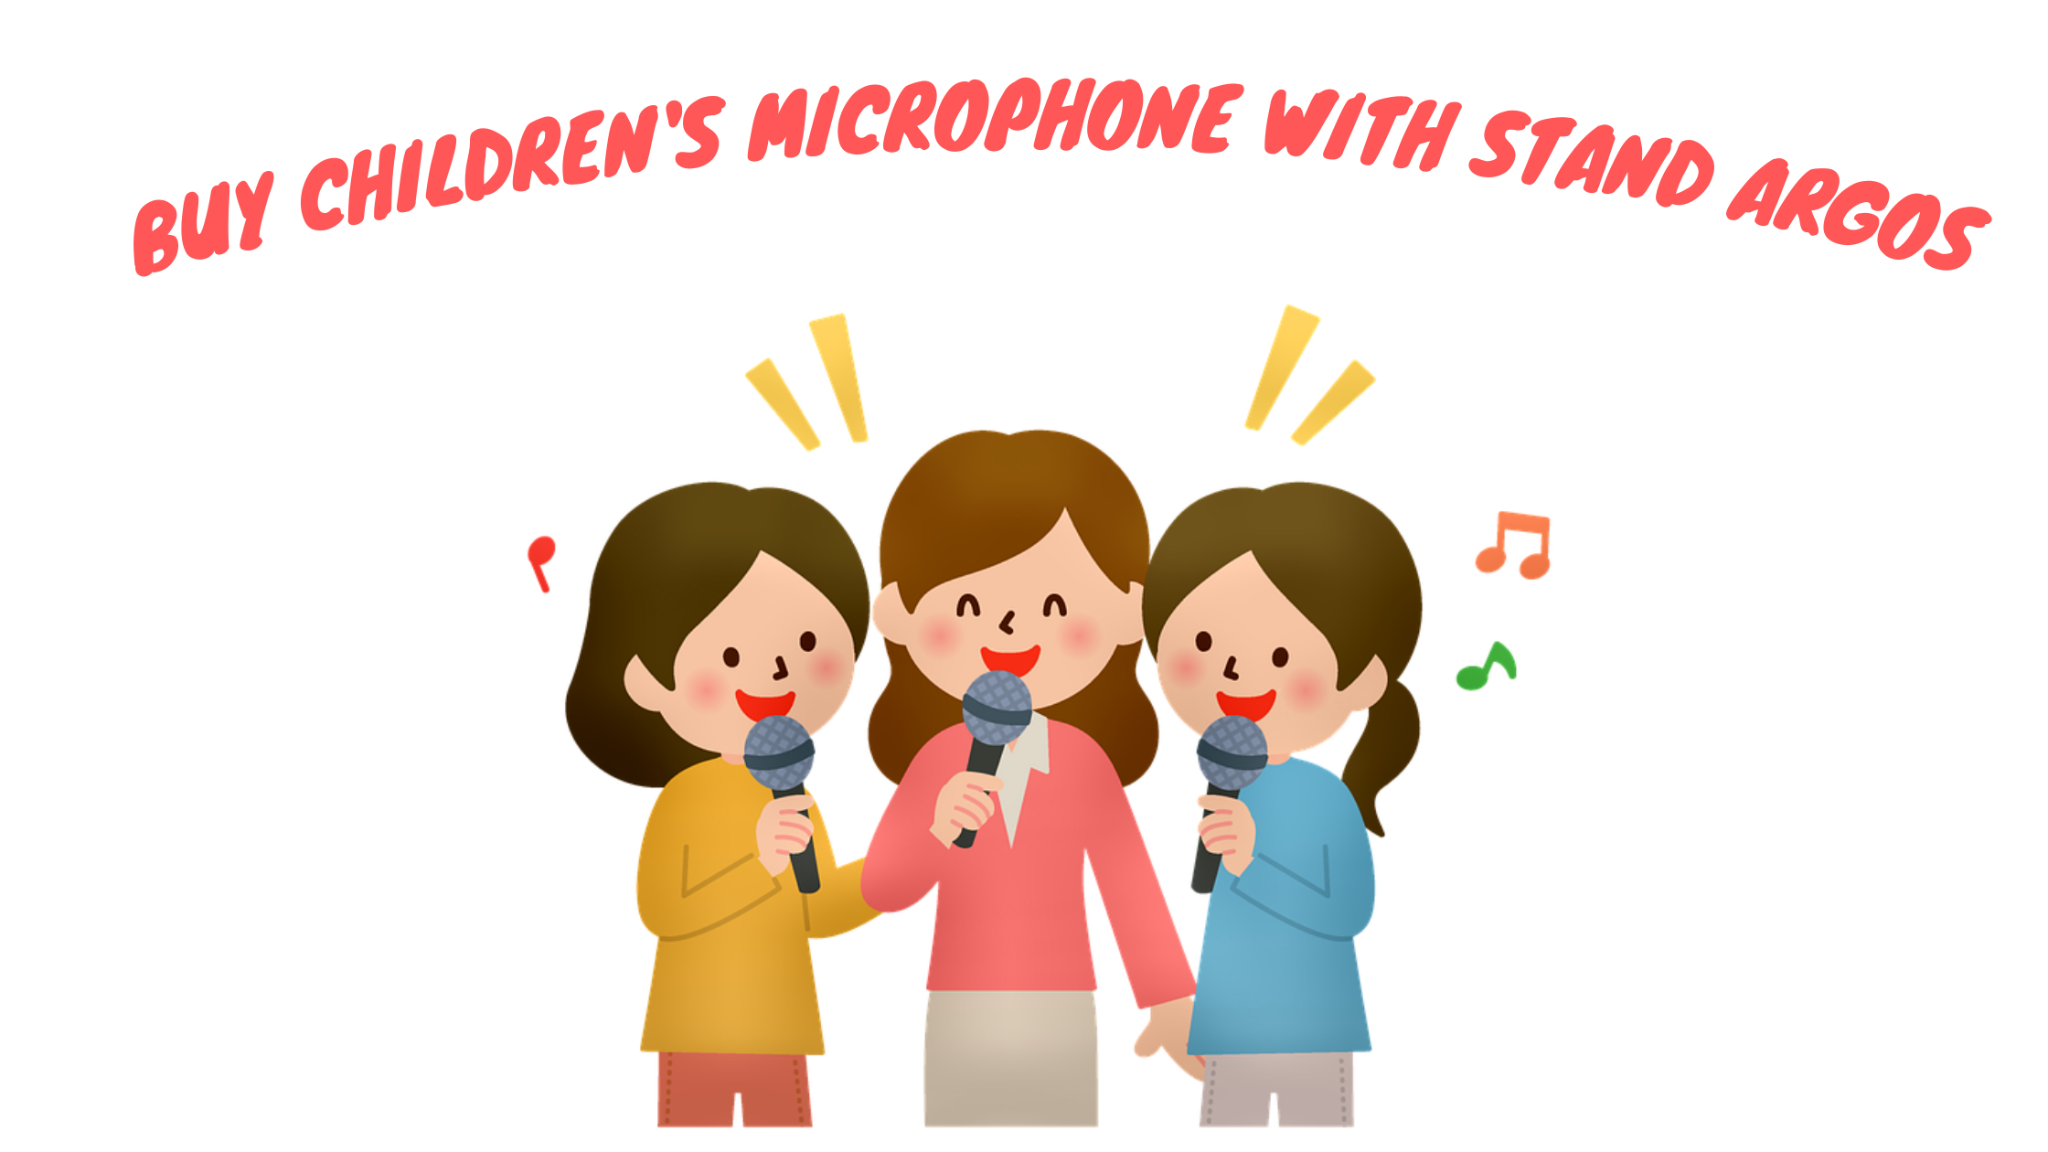 Compre Microfone Infantil Com Suporte Argos